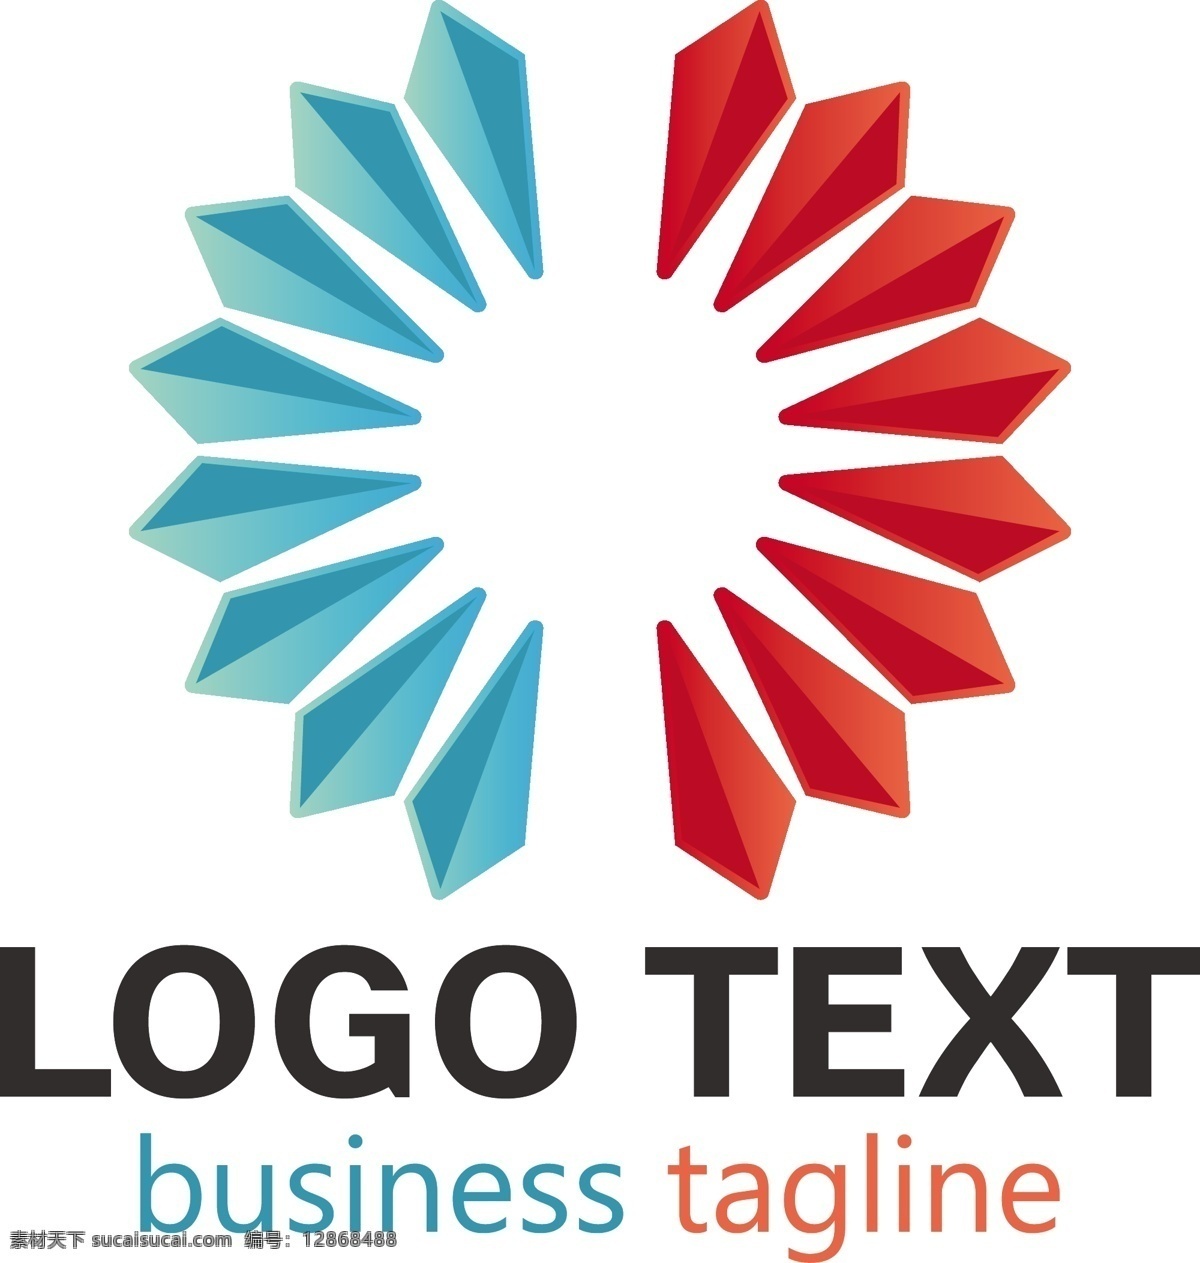 企业标志模板 背景 标志 抽象的背景 商业 抽象 模板 标志设计 营销 标识 公司 品牌 创意 抽象标志 元素 现代 插图 设计元素 身份 白色